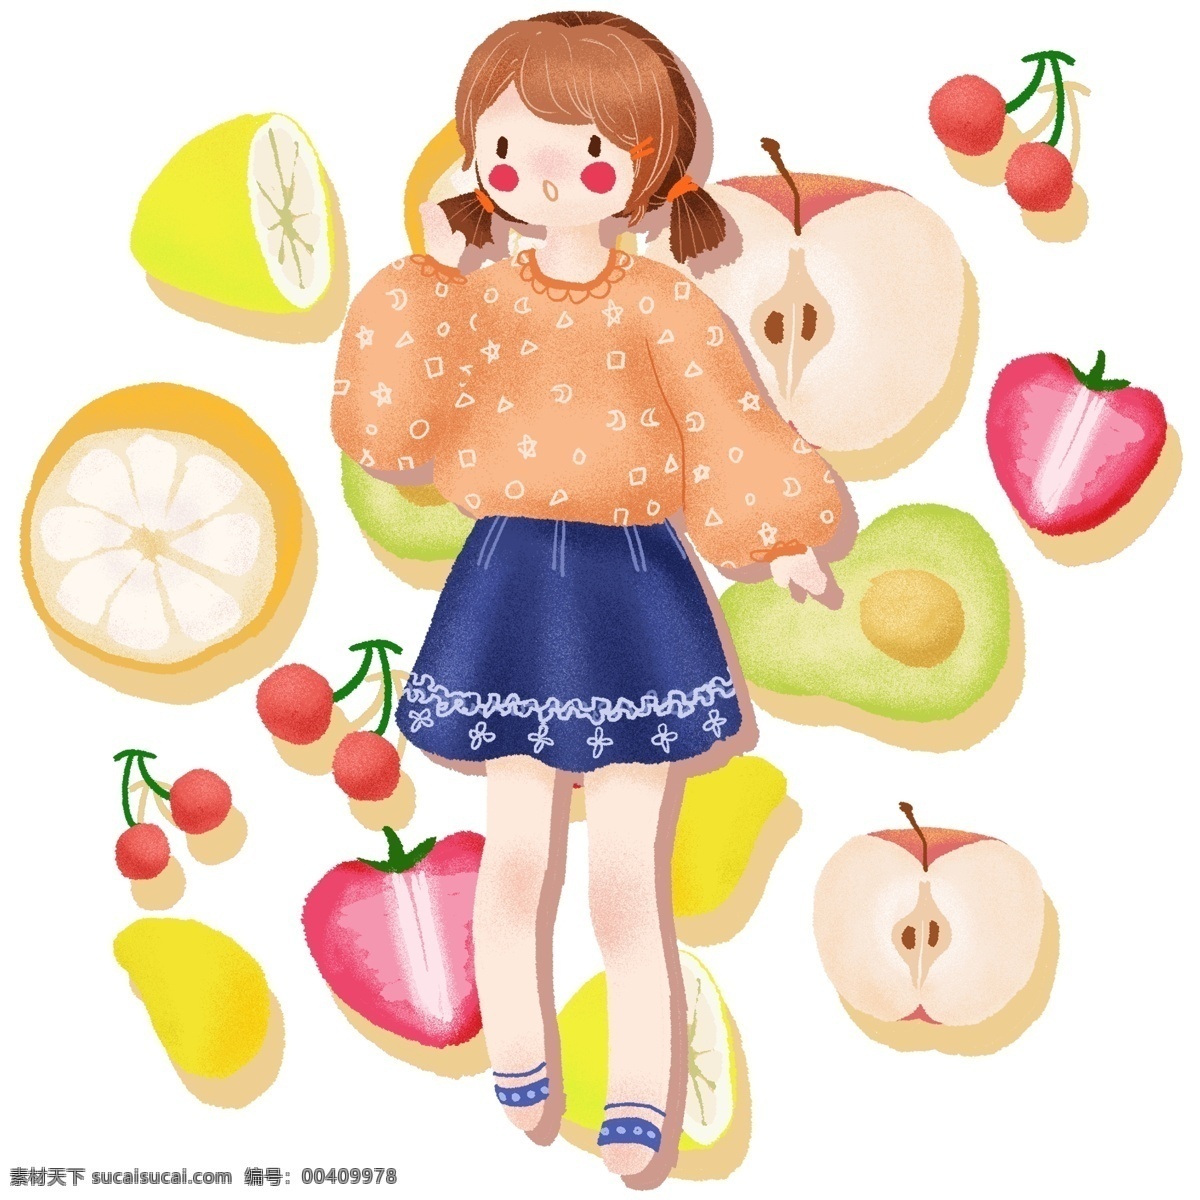 手绘 可爱 卡通 女孩 水果 健康生活 苹果 樱桃 草莓 橘子 柠檬 芒果 牛油果 橙子 健康 生活 女人 少女 学生 营养